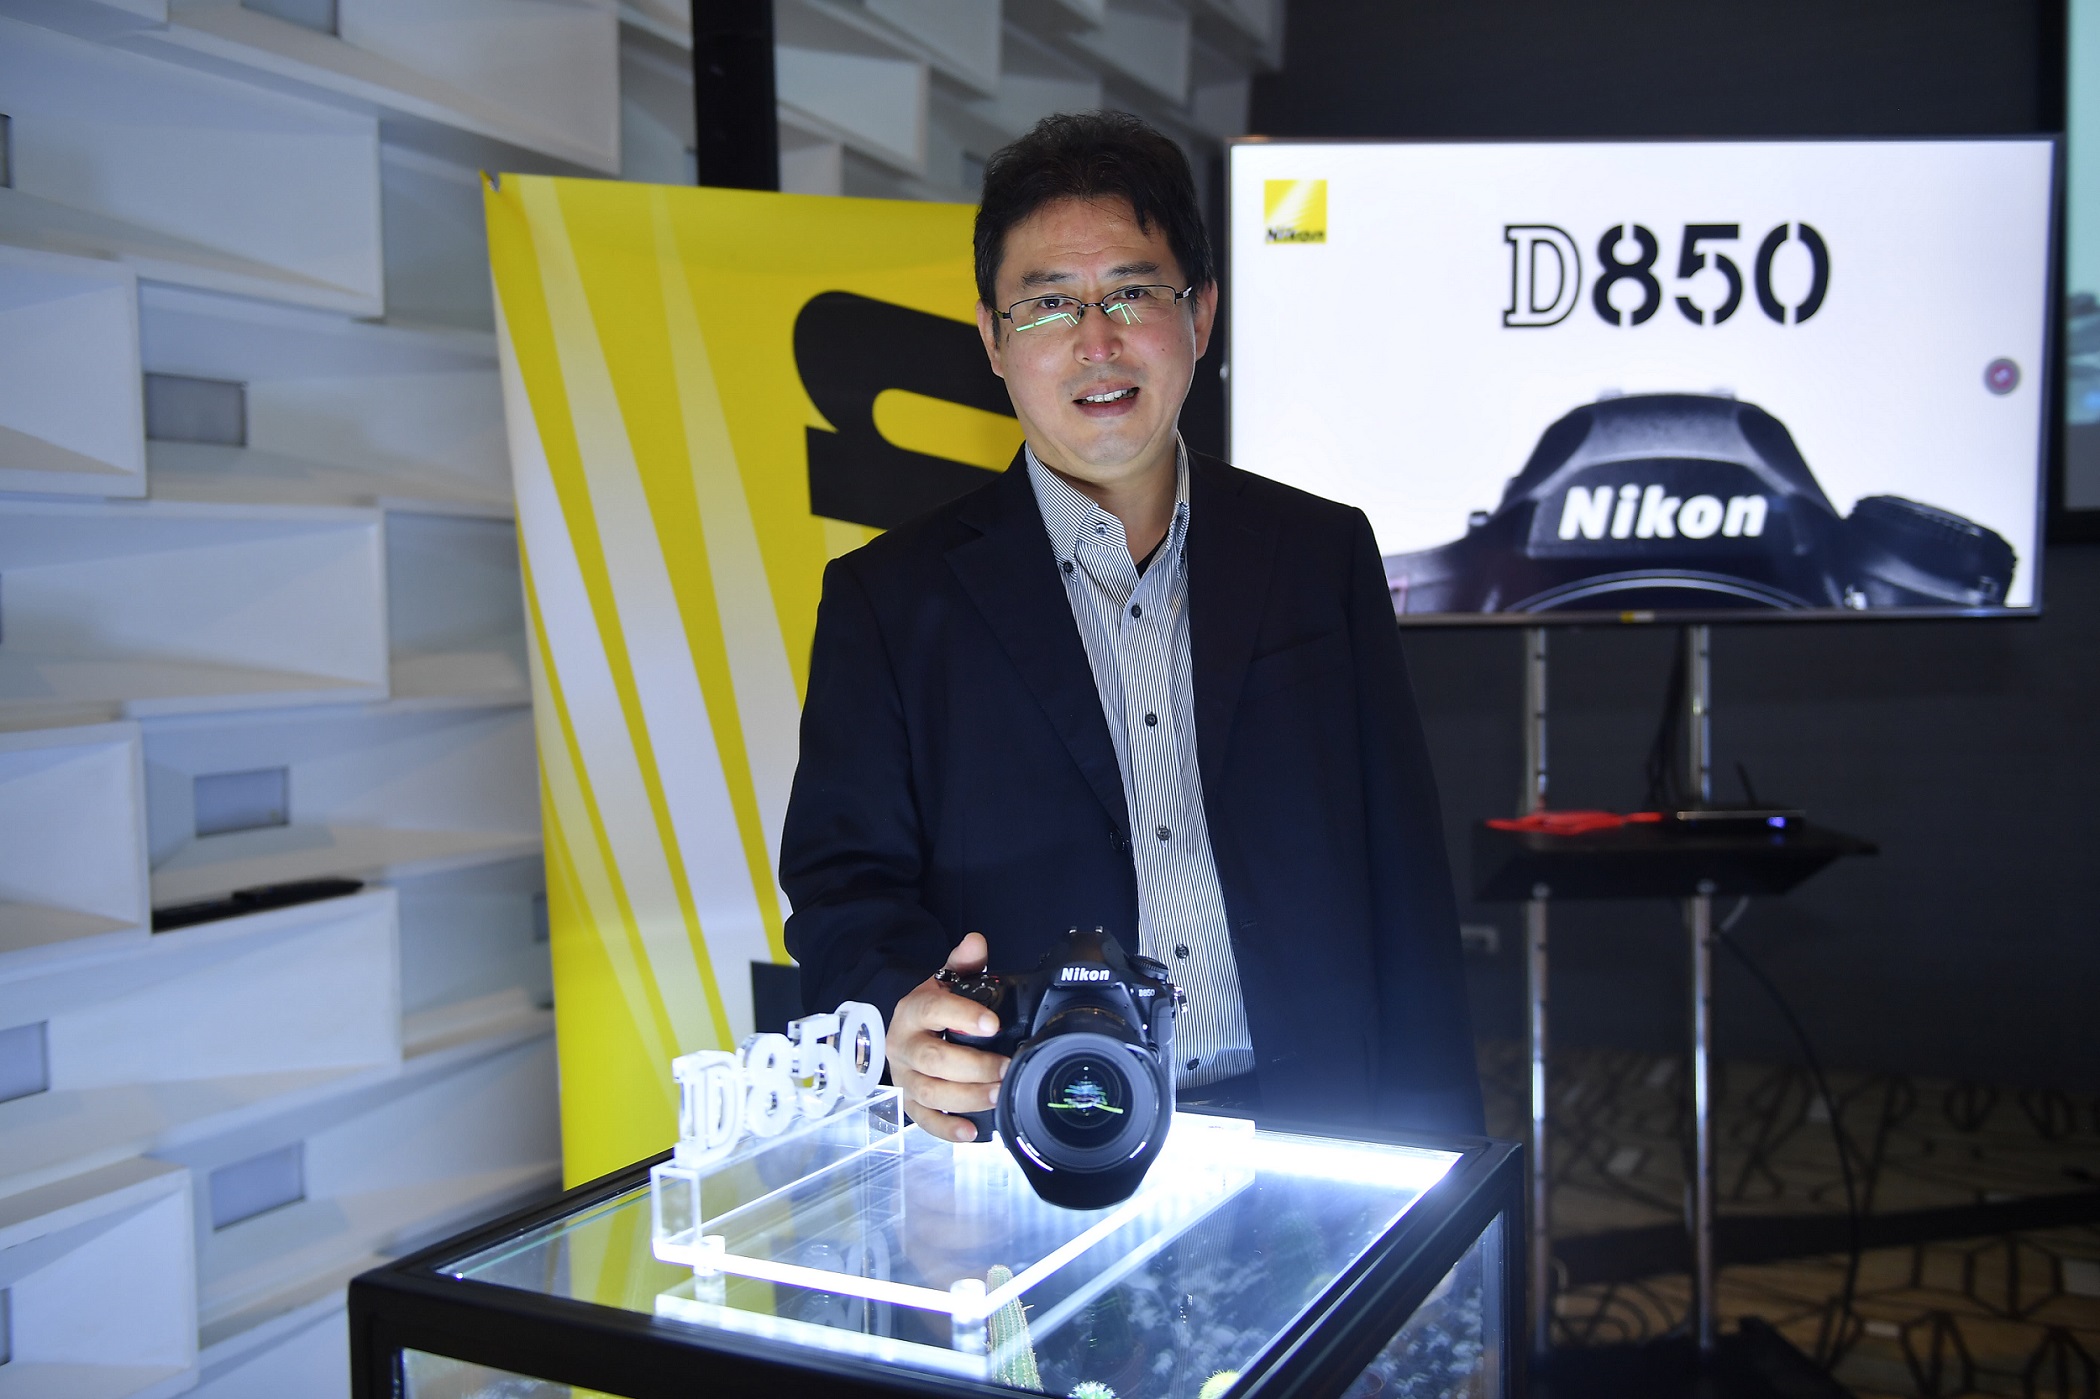 นิคอนเปิดตัว ‘D850’ เชิญช่างภาพร่วมสัมผัสและทดลองสุดยอดกล้องฟูลเฟรมรุ่นล่าสุด